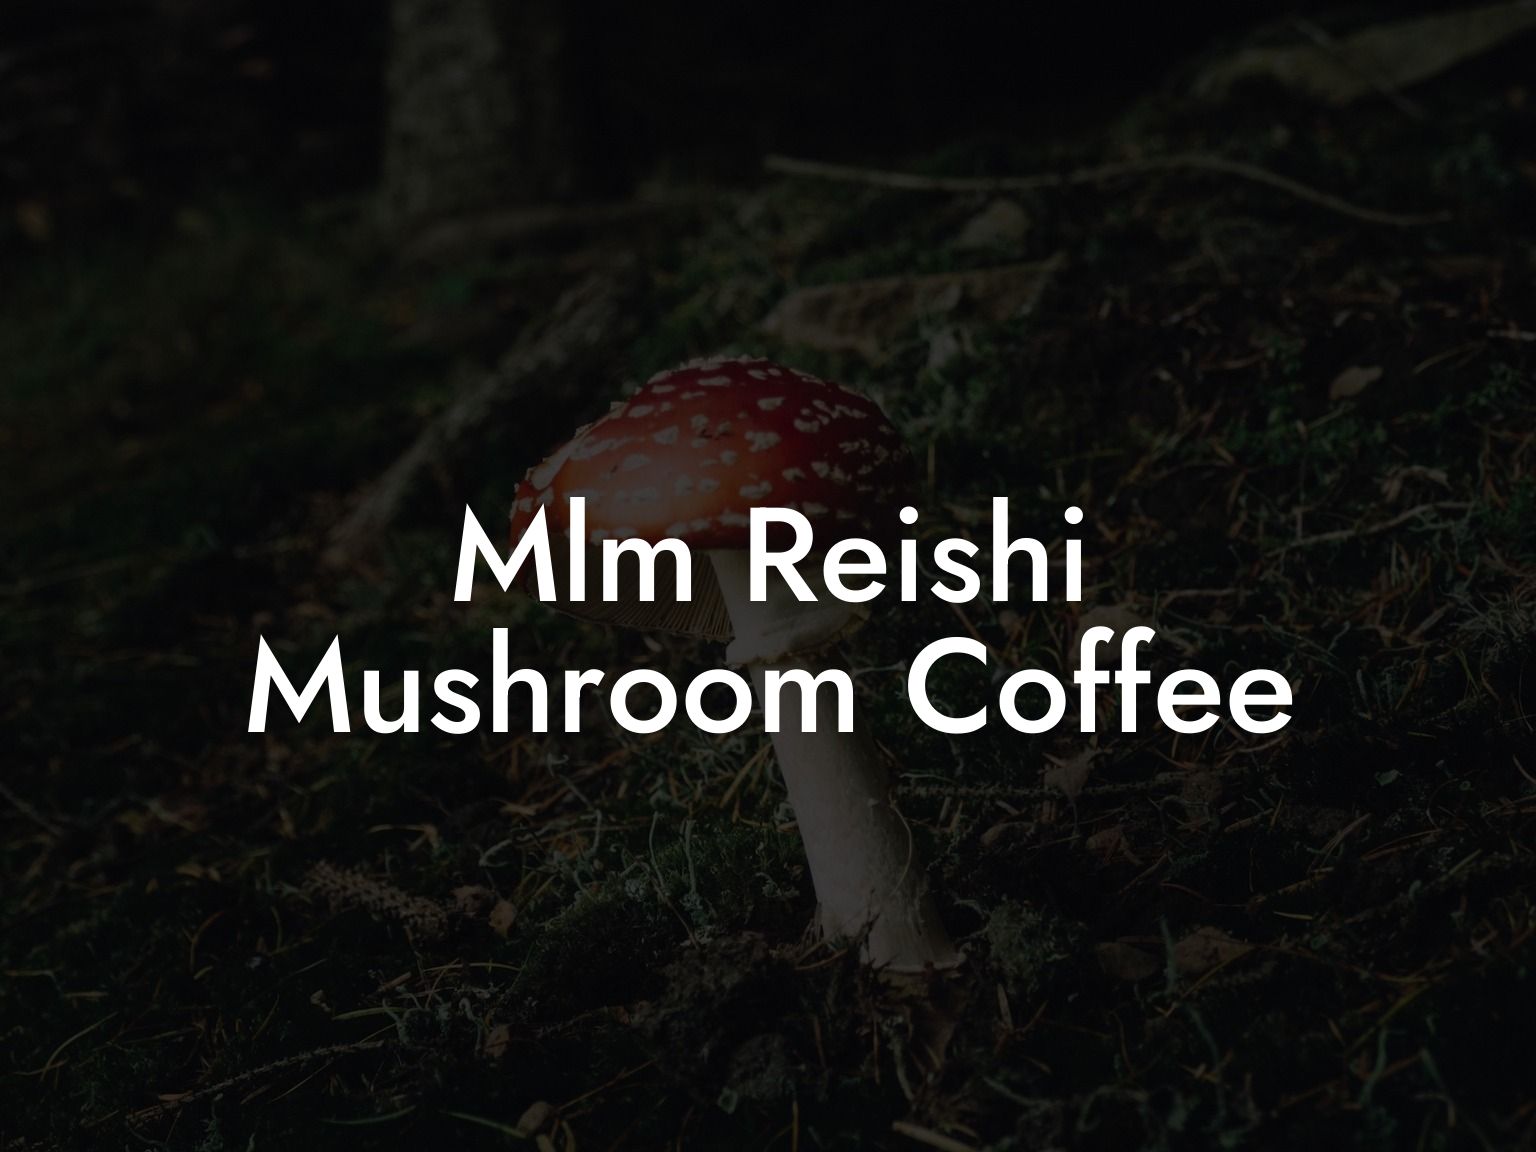 Mlm Reishi Mushroom Coffee